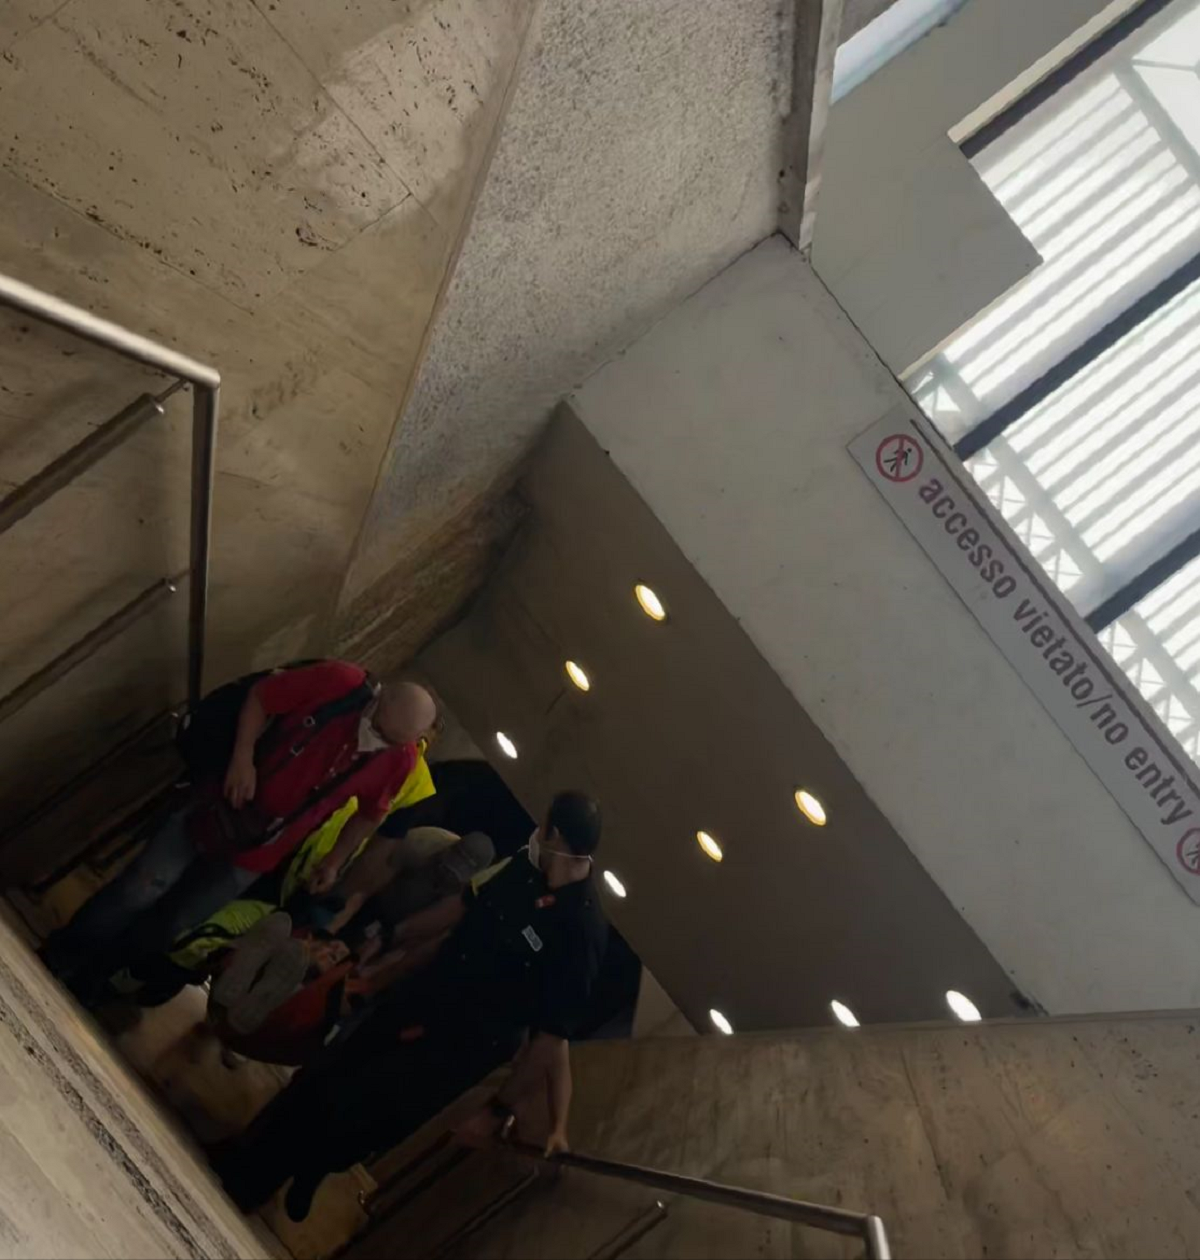 passeggero ha un malore improvviso in metro: i soccorsi